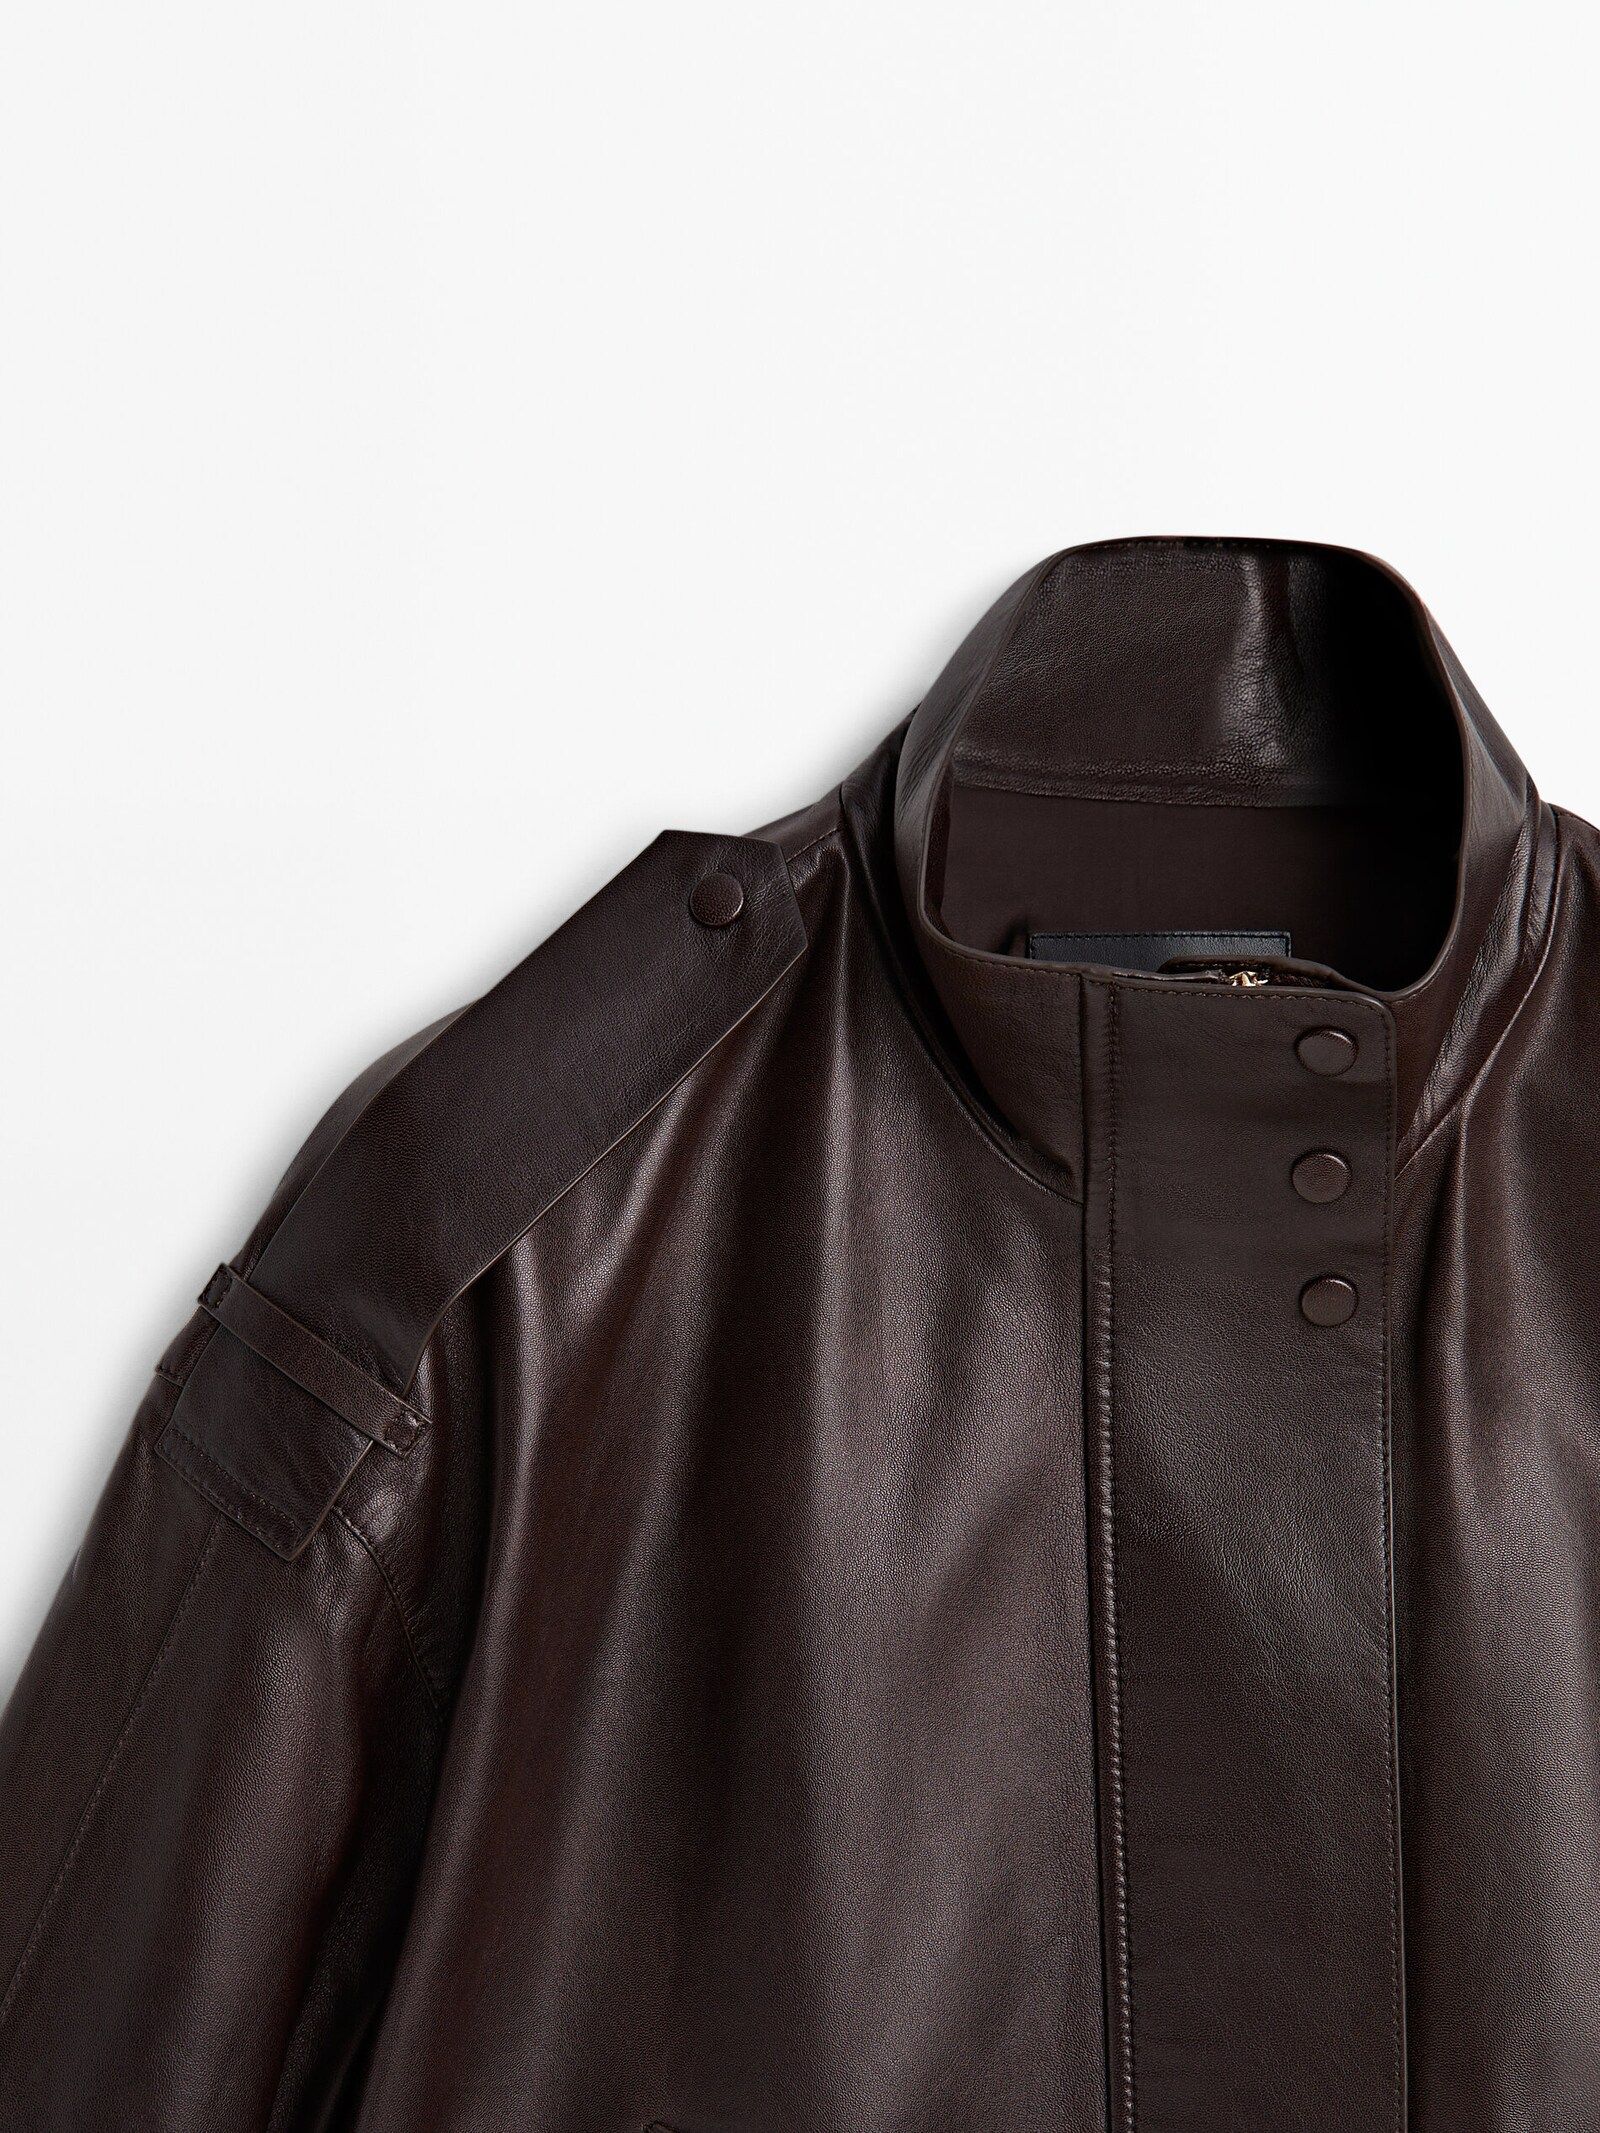 Nappa leather jacket with adjustable hem | Massimo Dutti UK